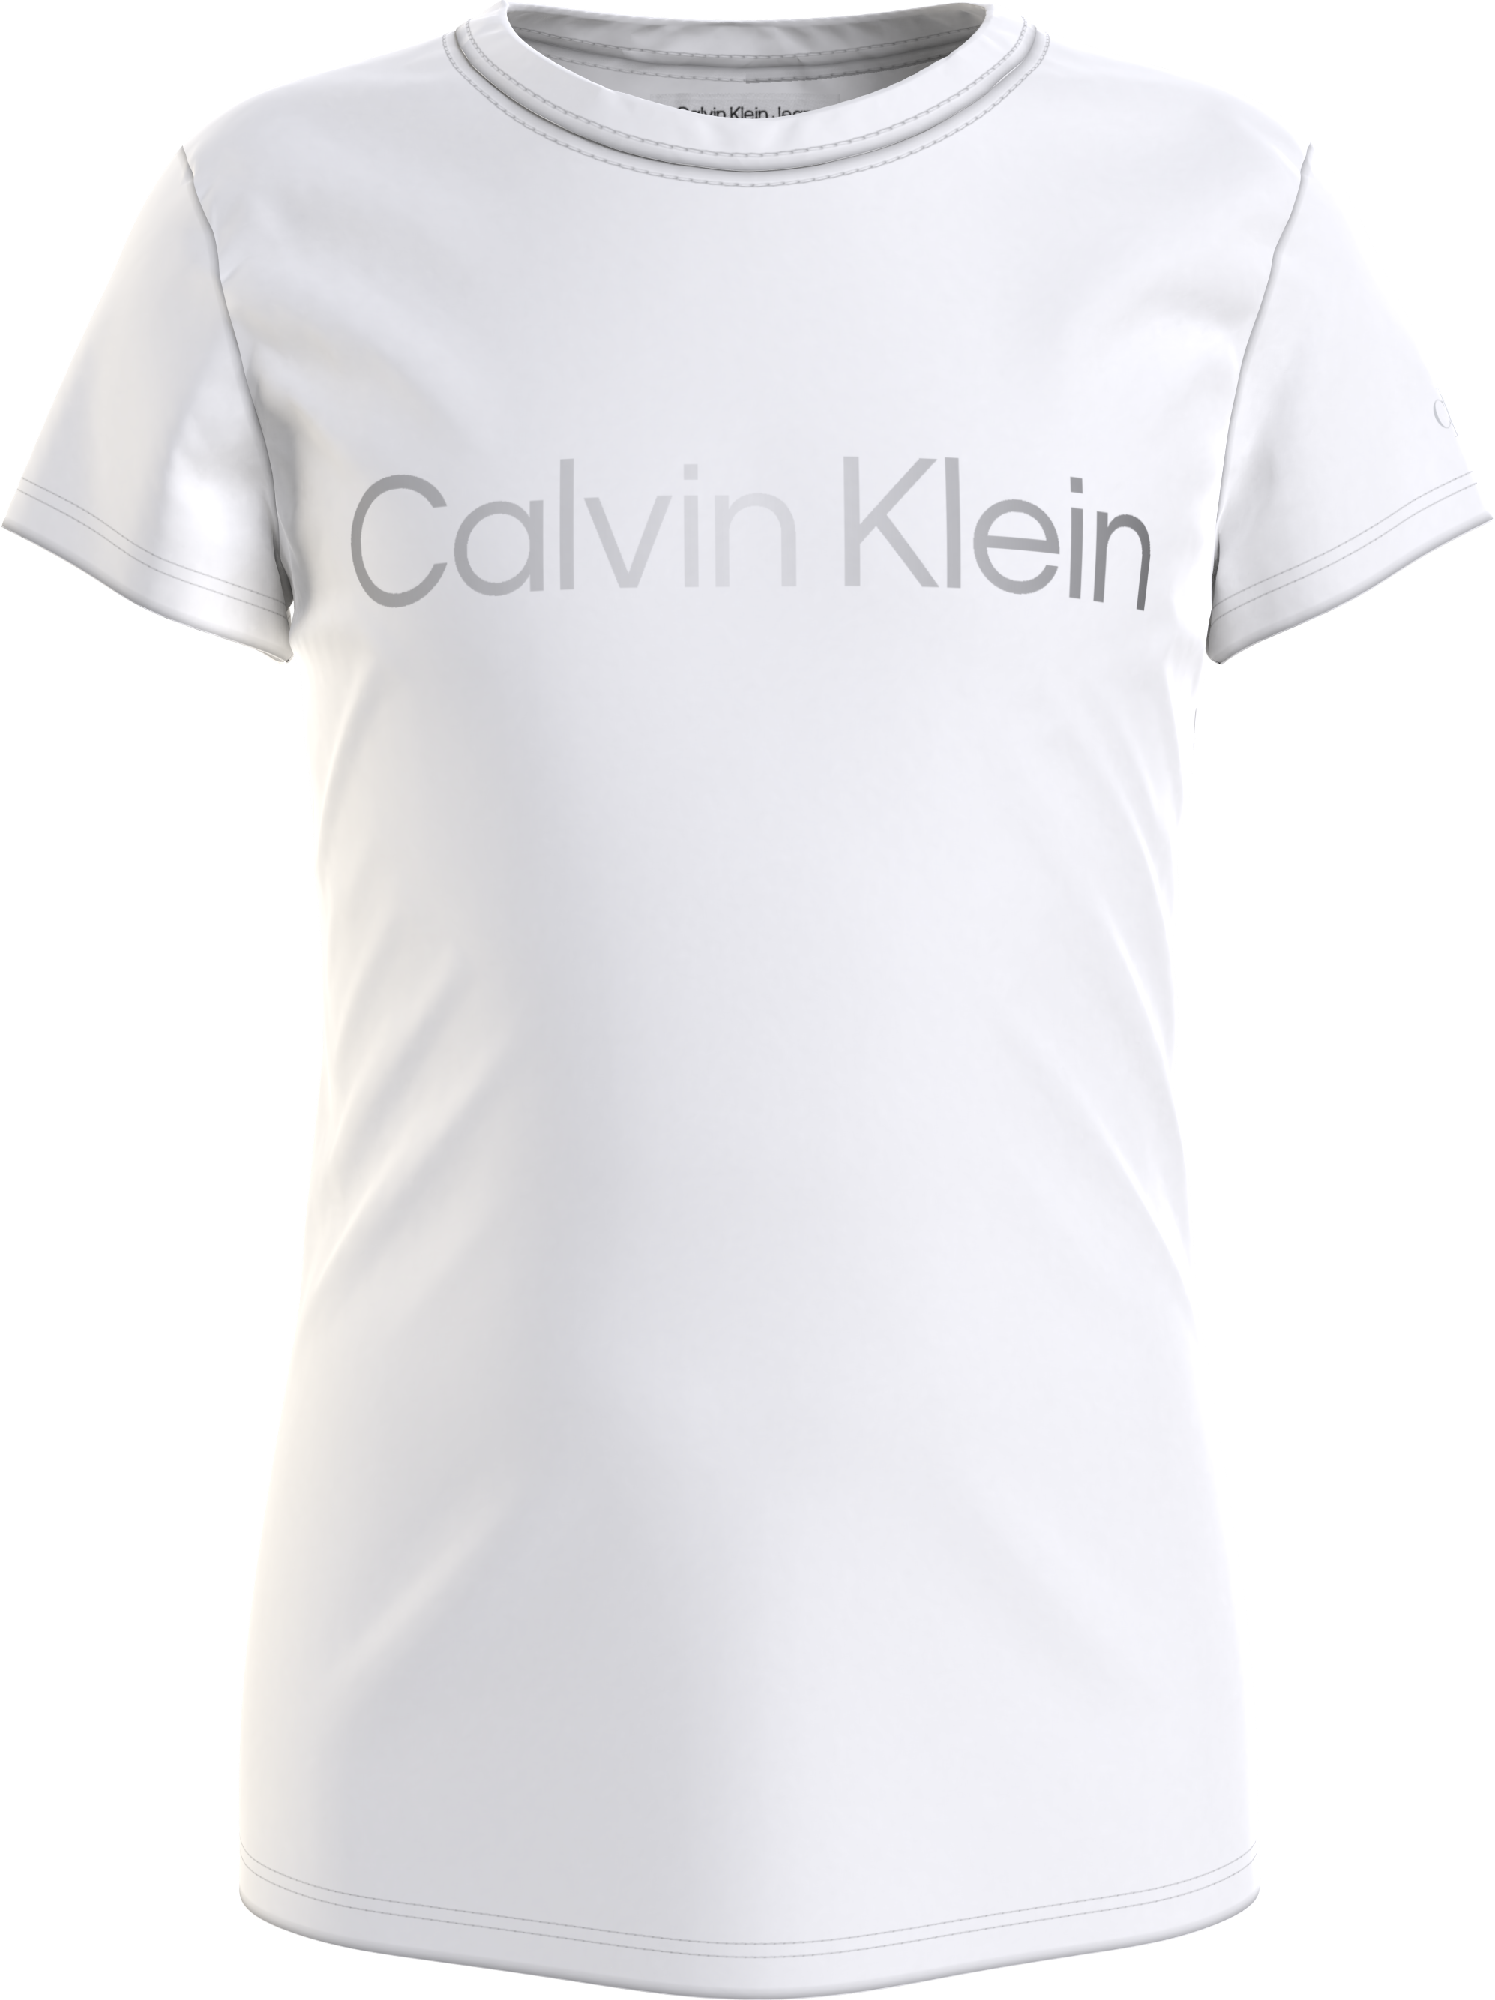 Calvin Klein INST SILVER LOGO SLIM FIT T-SHIRT